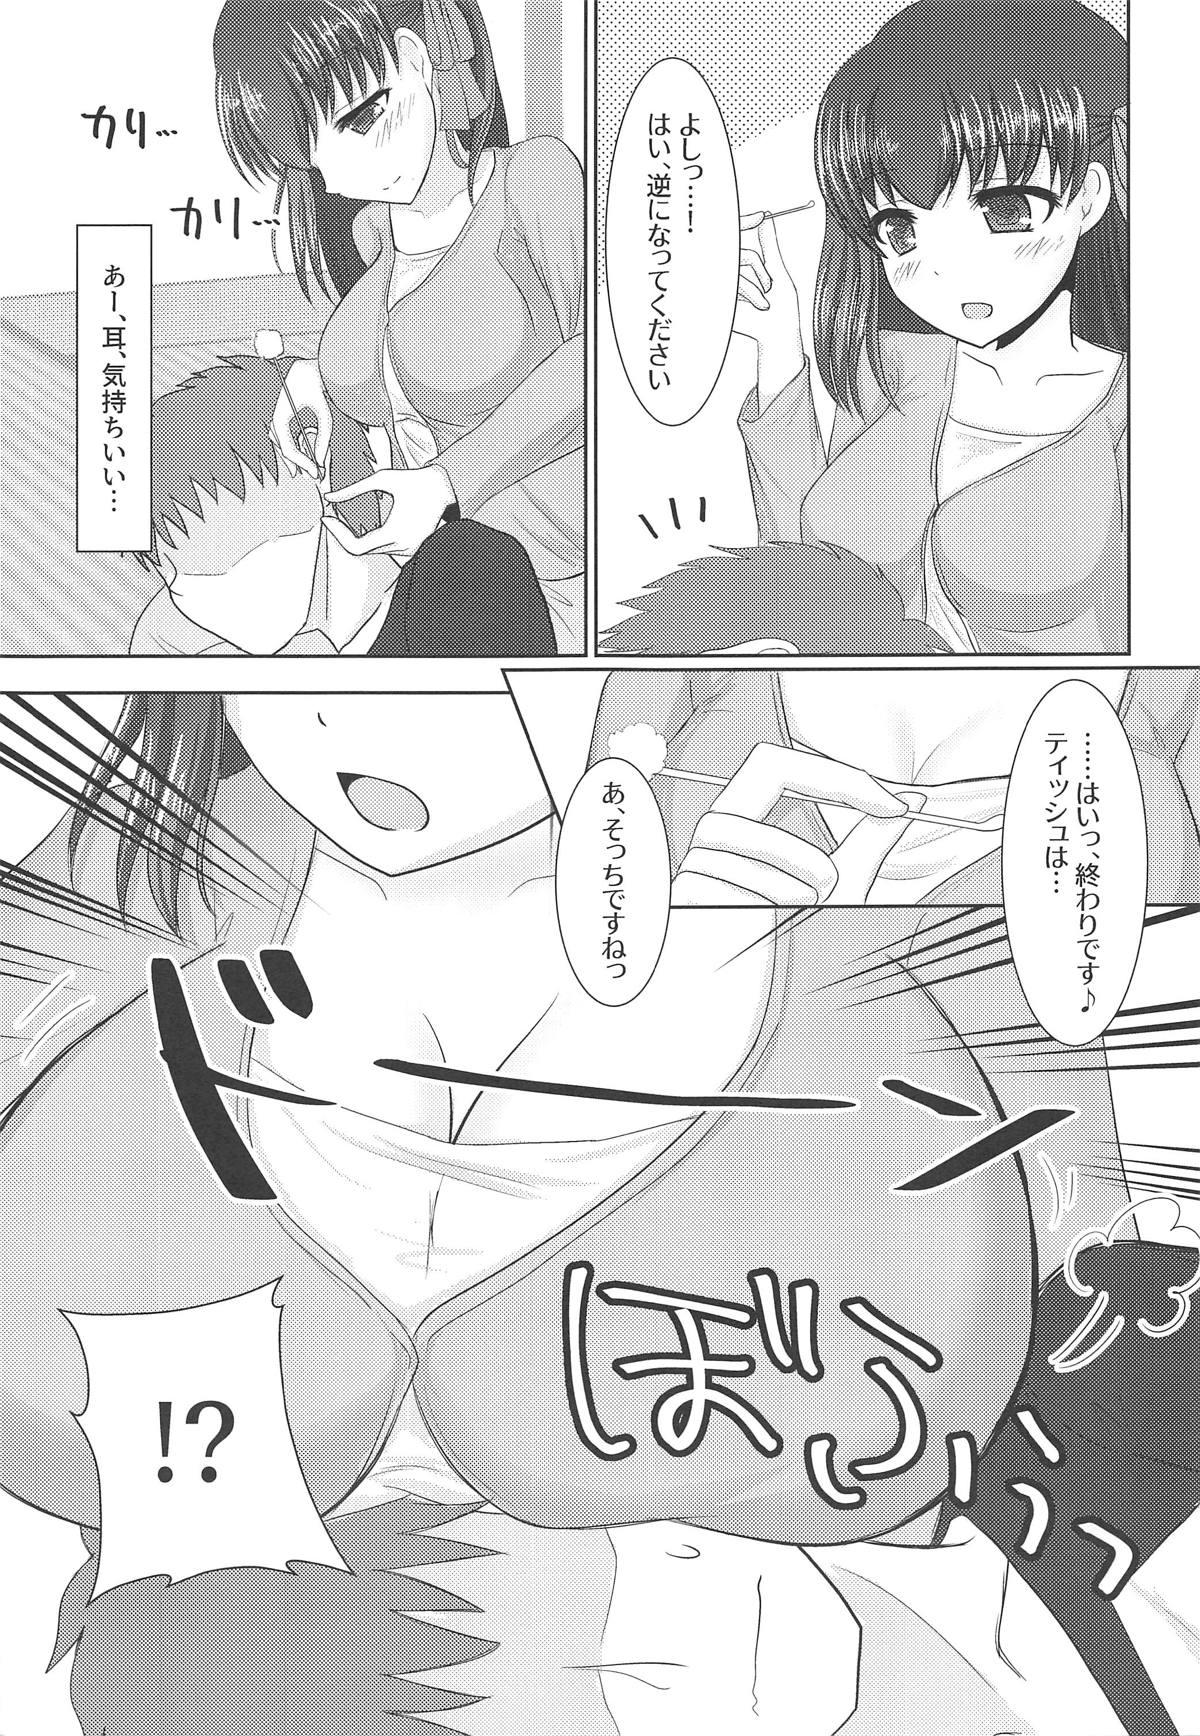 Dotado Hiza no Ue ni Sakura - Fate stay night Hunks - Page 6